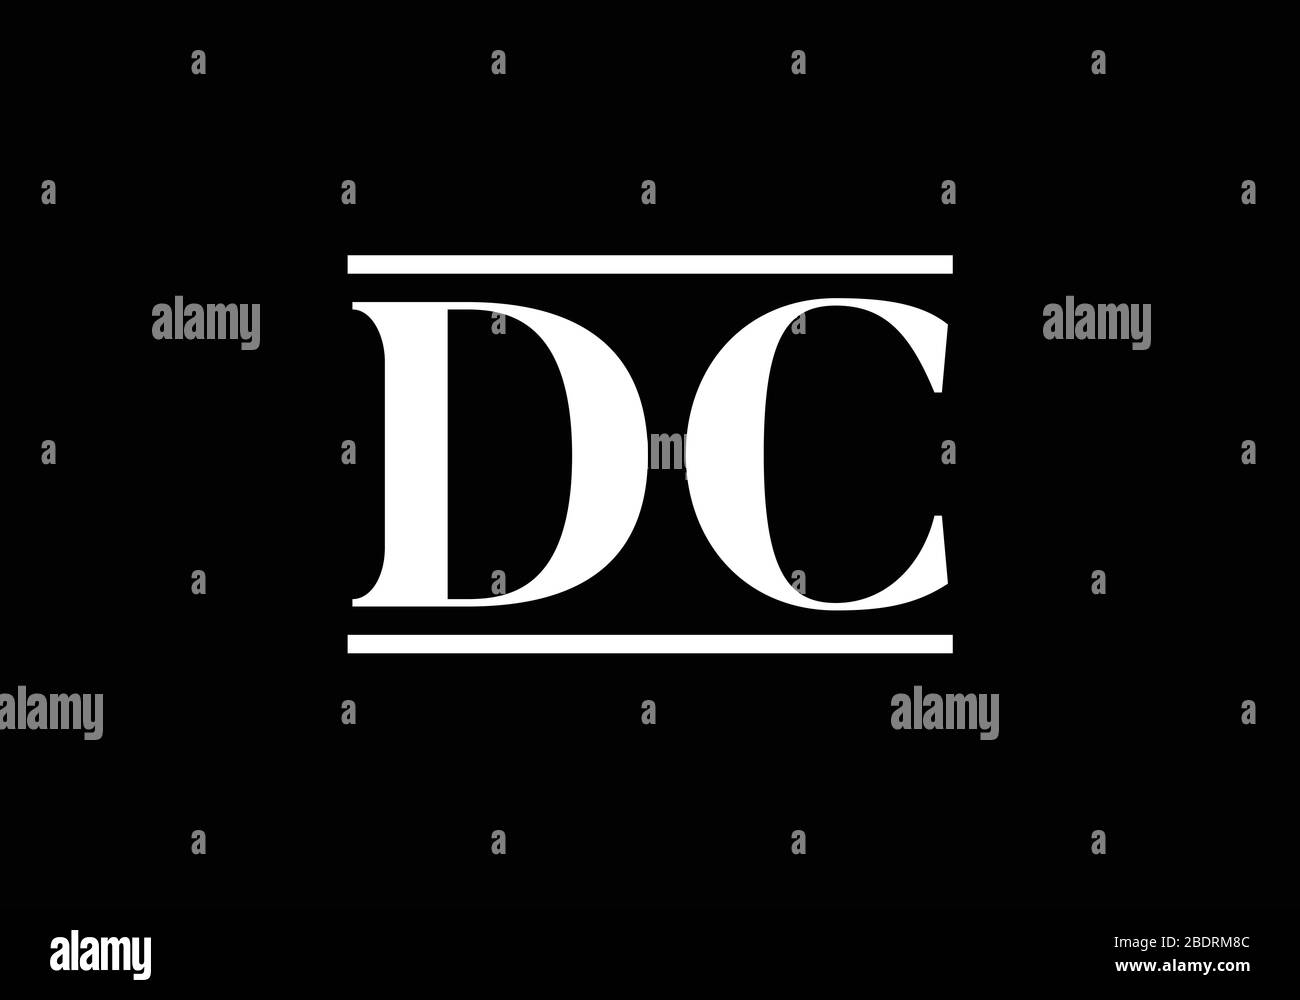 D C anfängliche Vektorvorlage für Logo-Design, grafisches Alphabet Symbol für Corporate Business Identity Stock Vektor